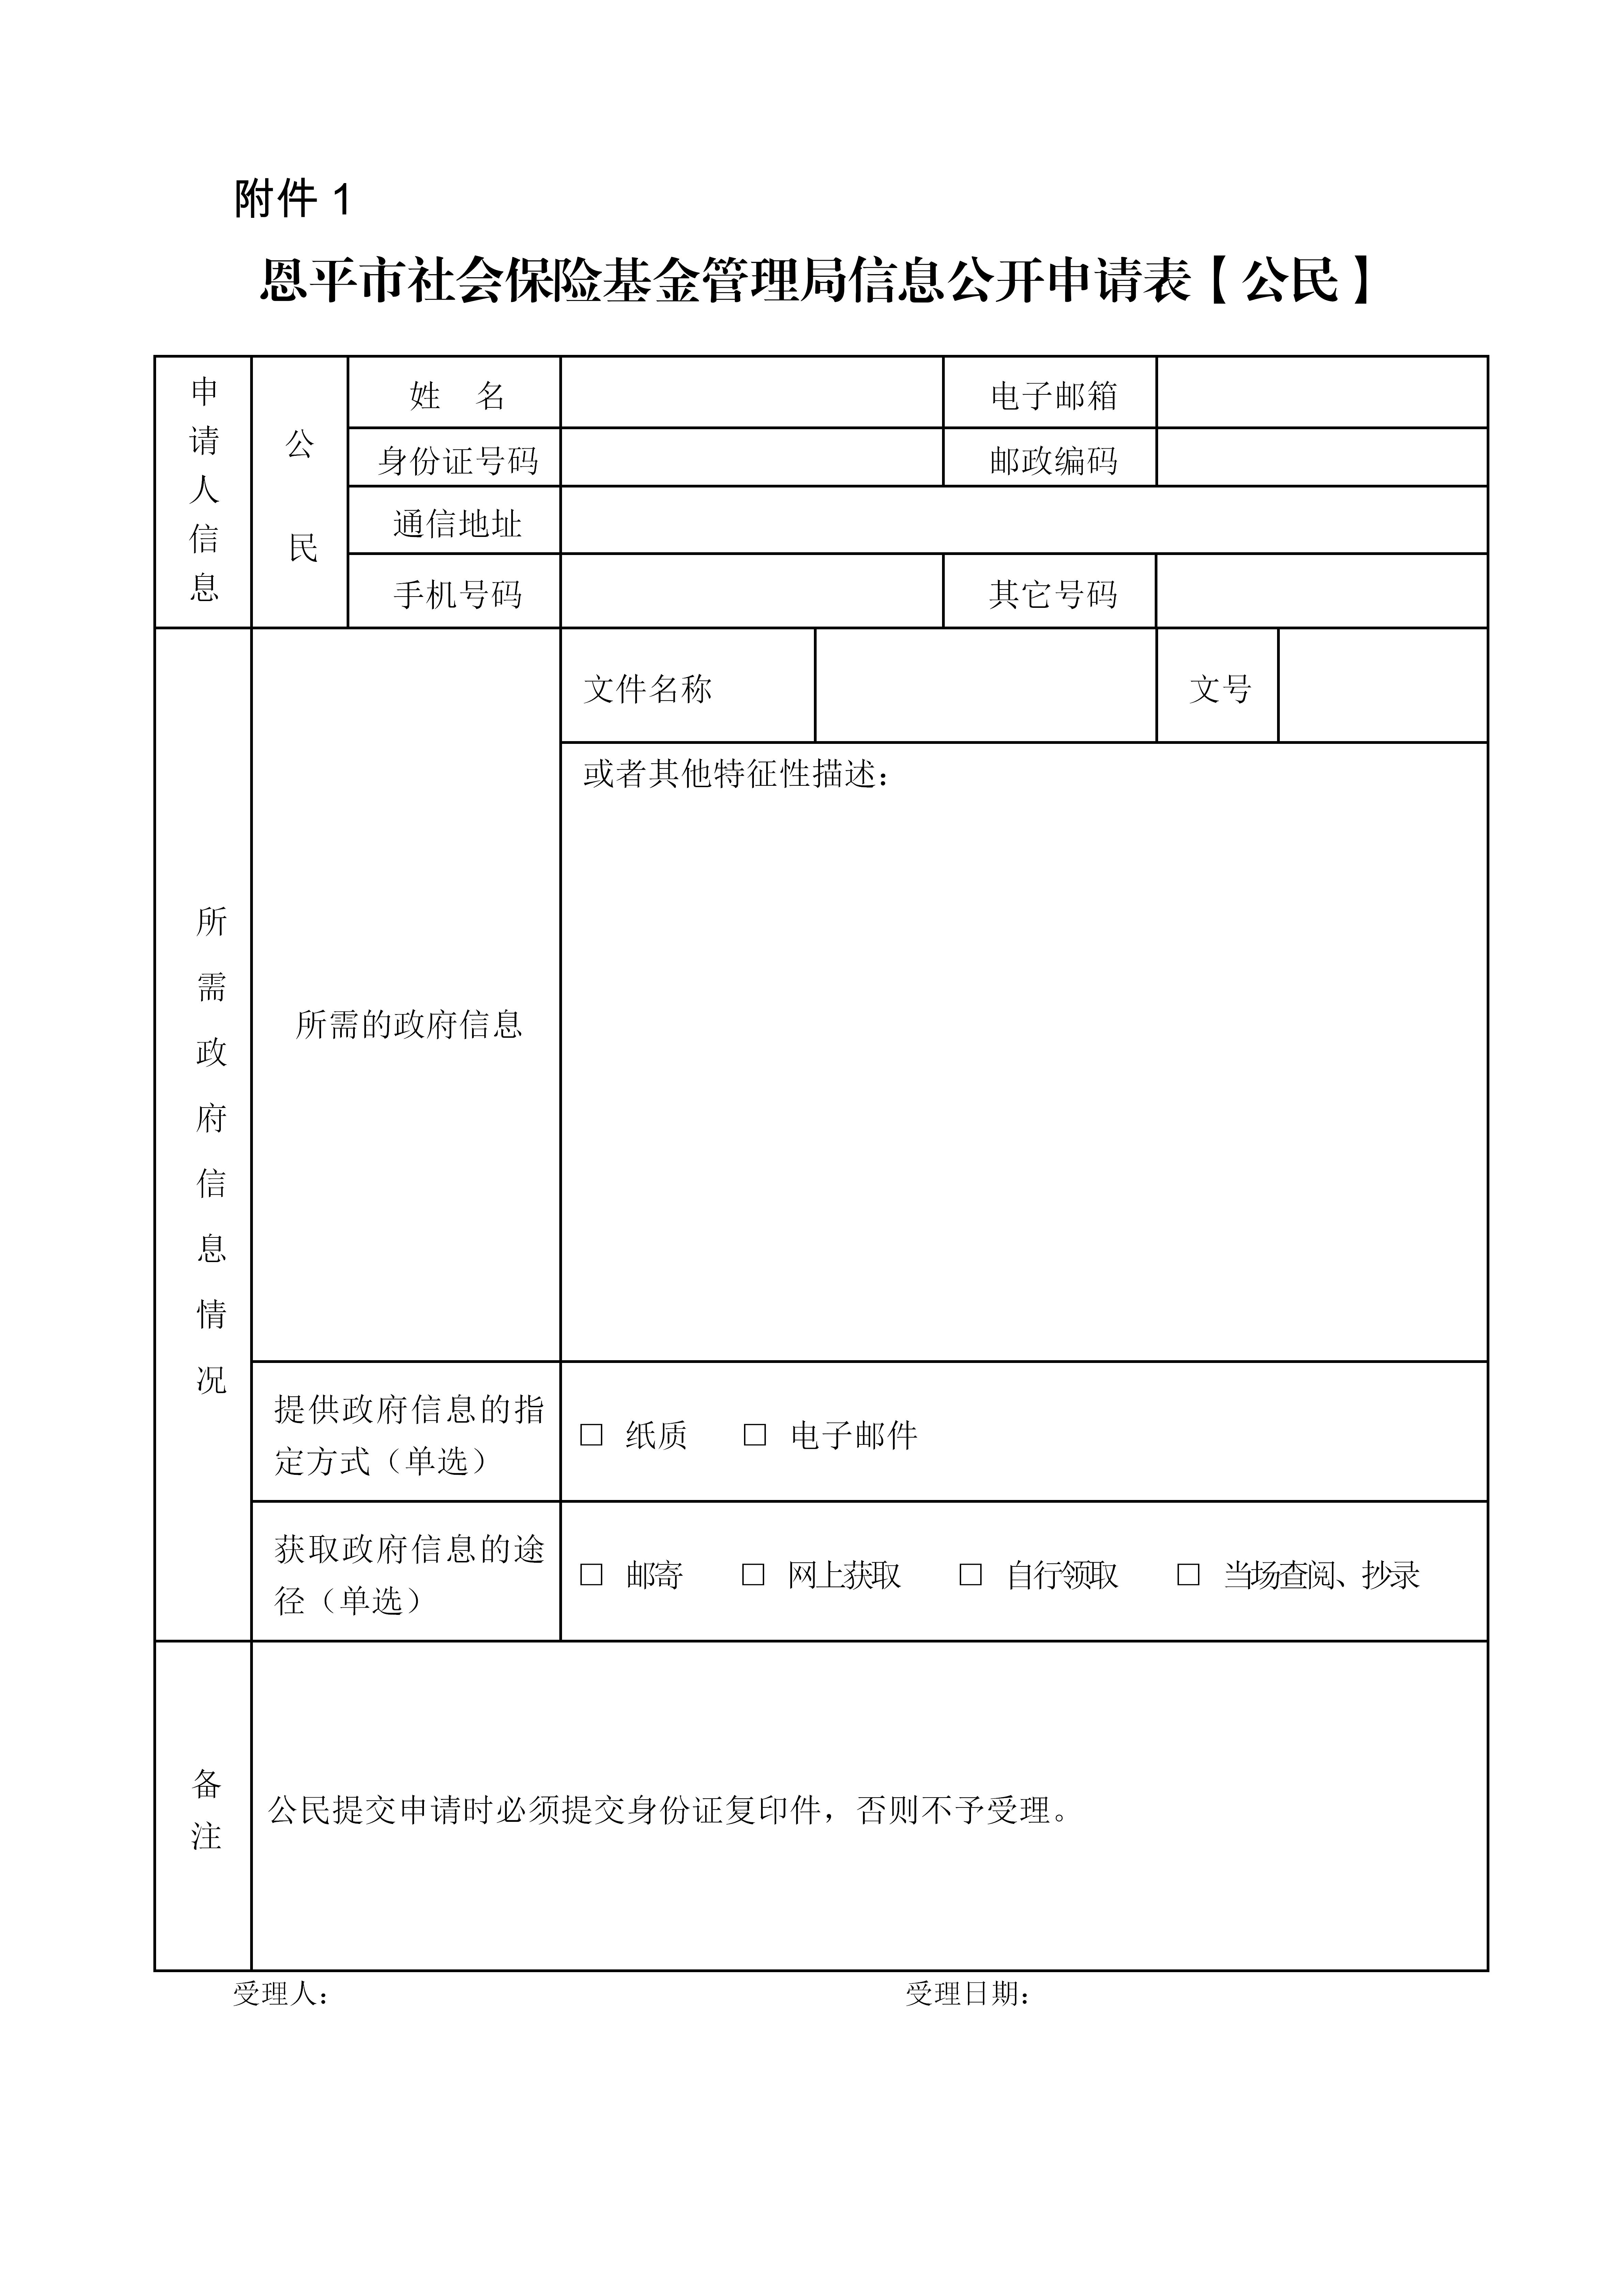 附件1：恩平市社会保险基金管理局信息公开申请表（公民）_01.jpg